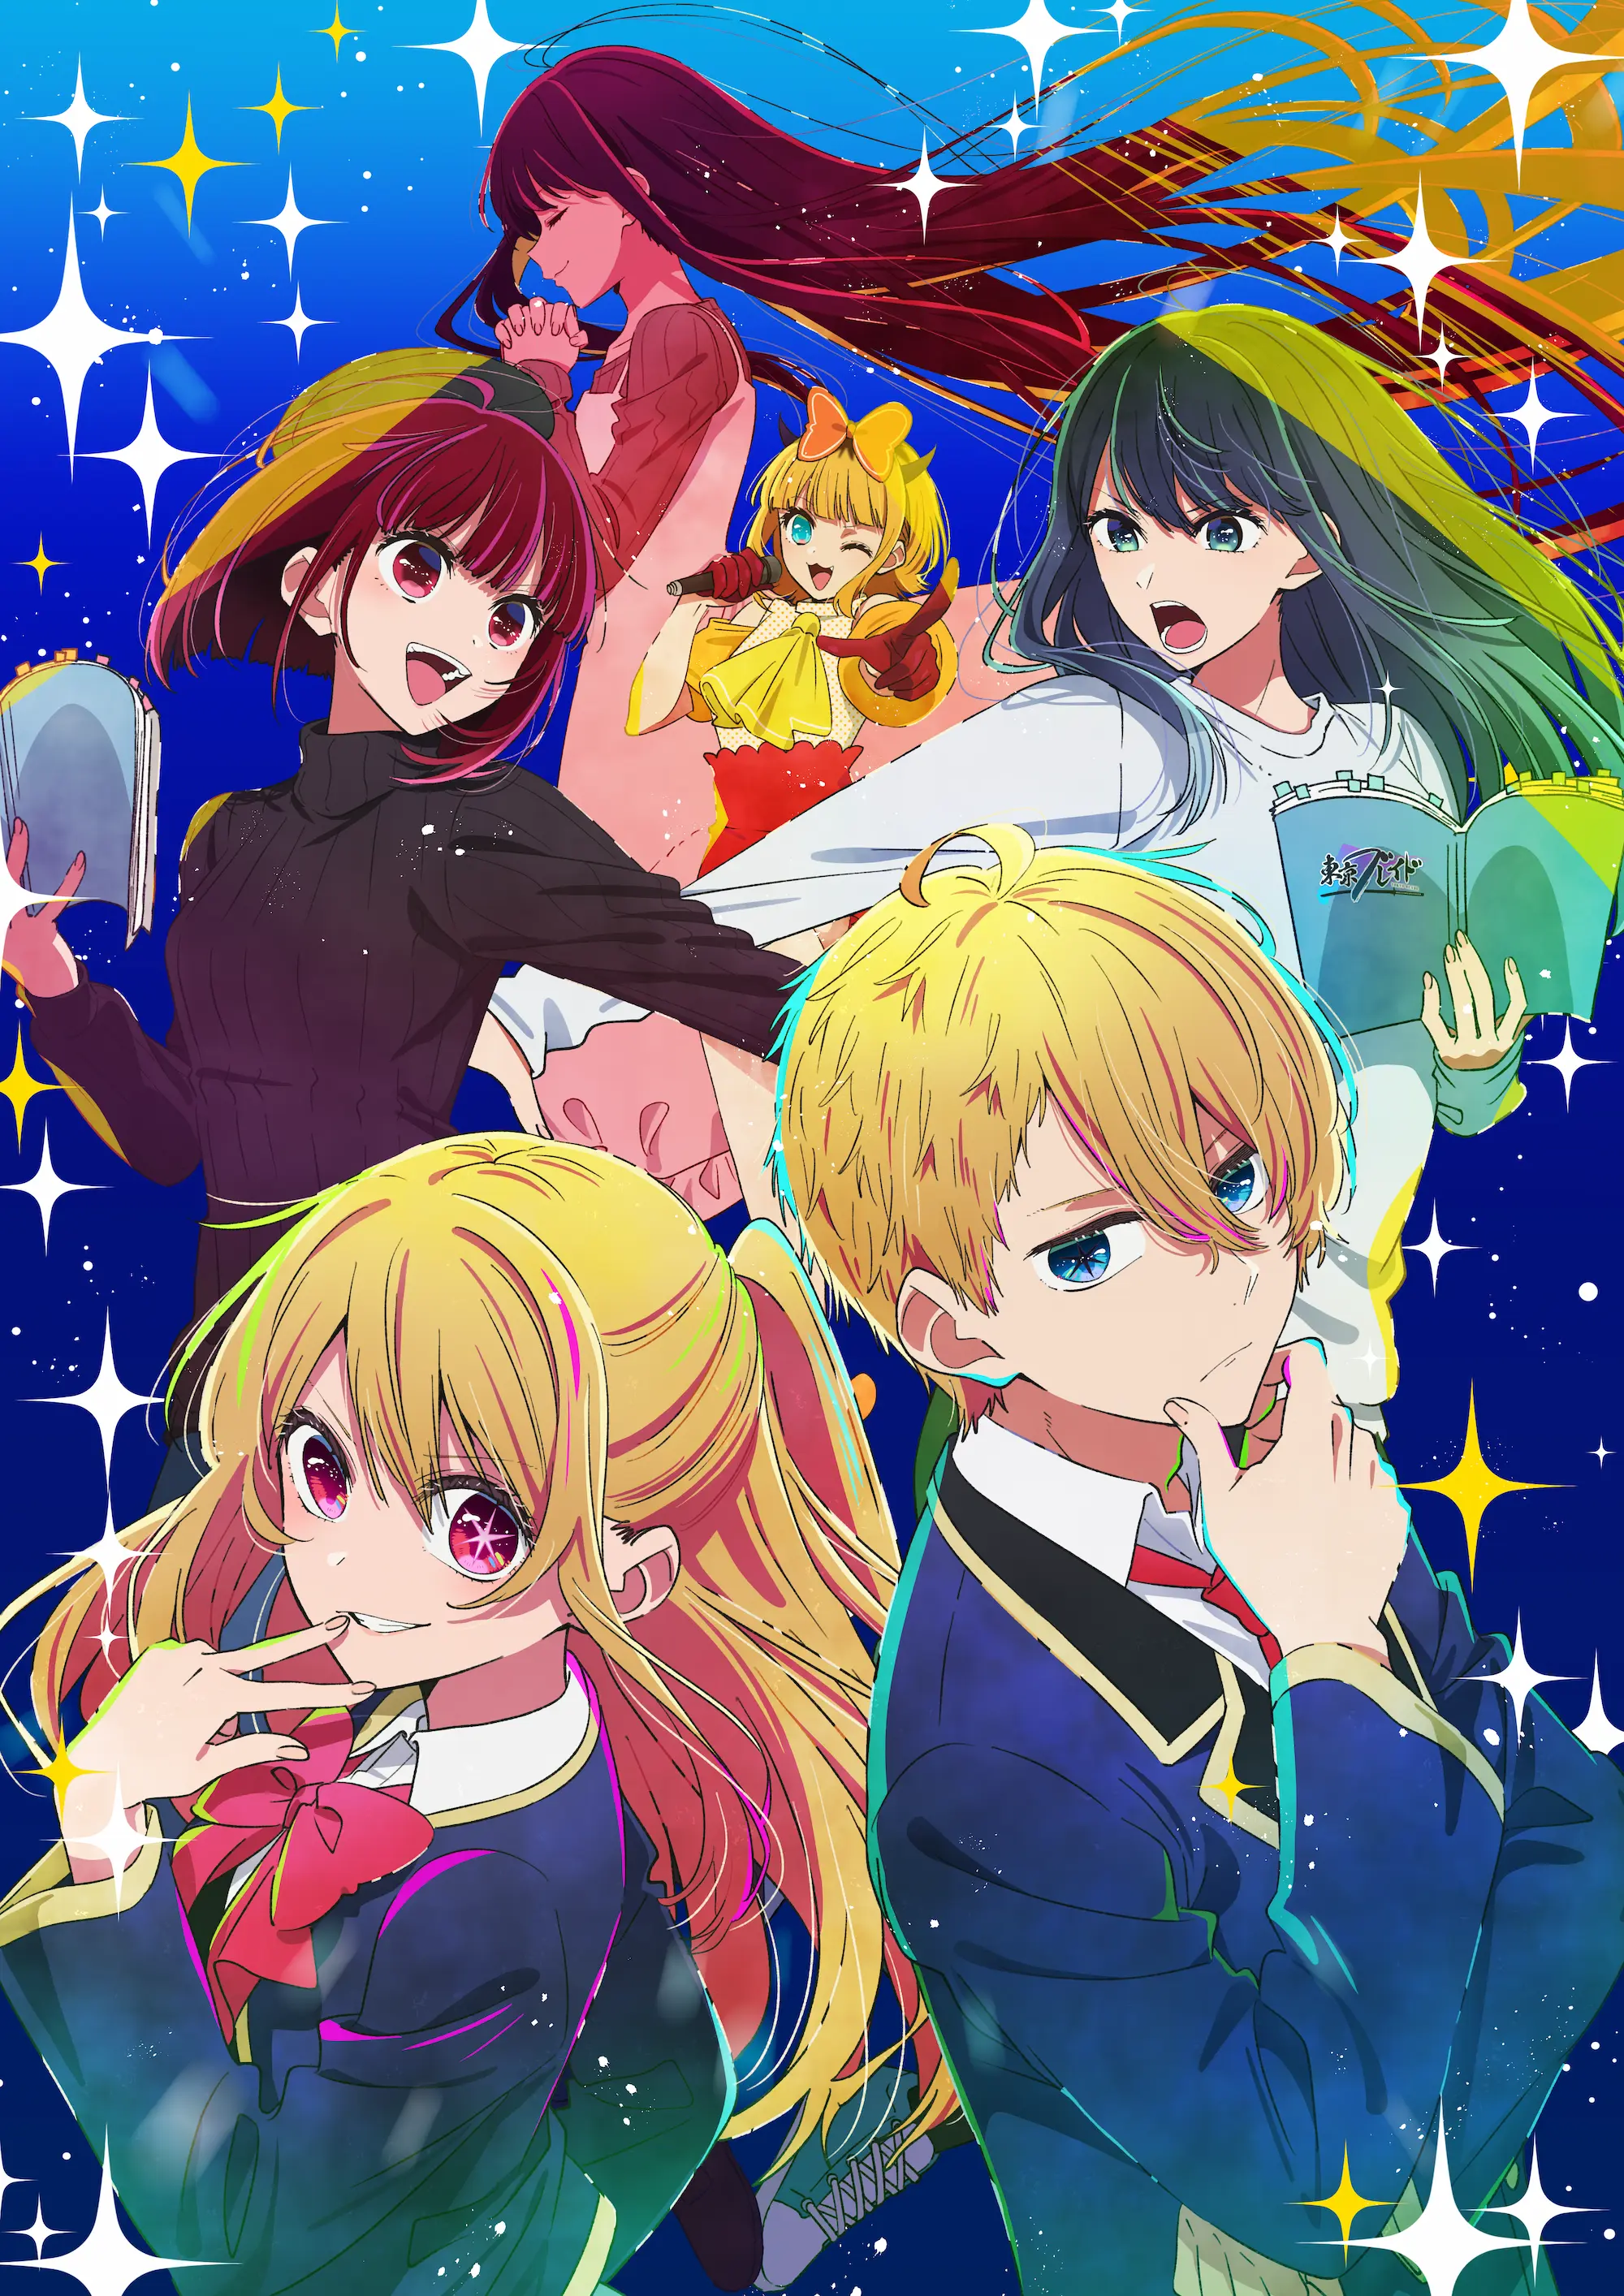 Assistir Anime Oshi no Ko (My Star) Legendado - Animes Órion